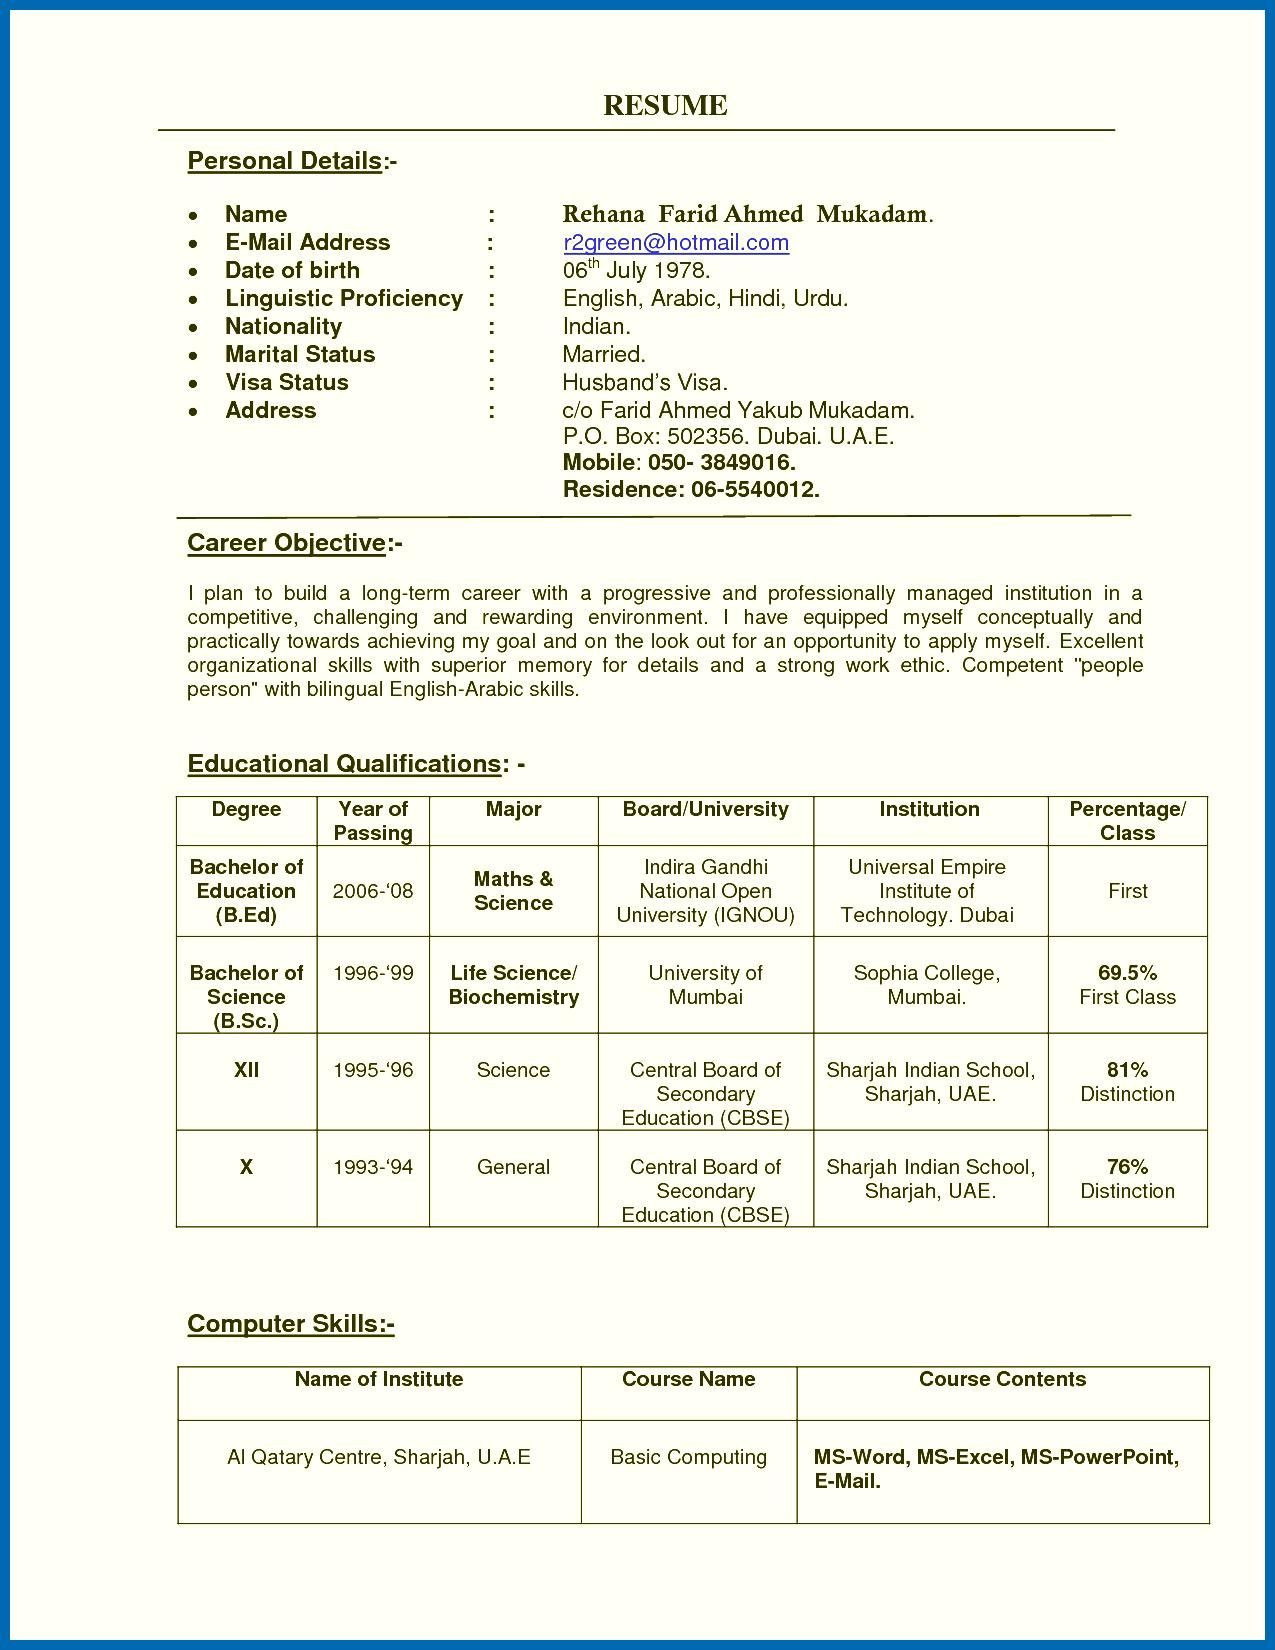 Sample Resume for Fresher School Teacher In India Resume Of A Teacher India Teachers Resume format India